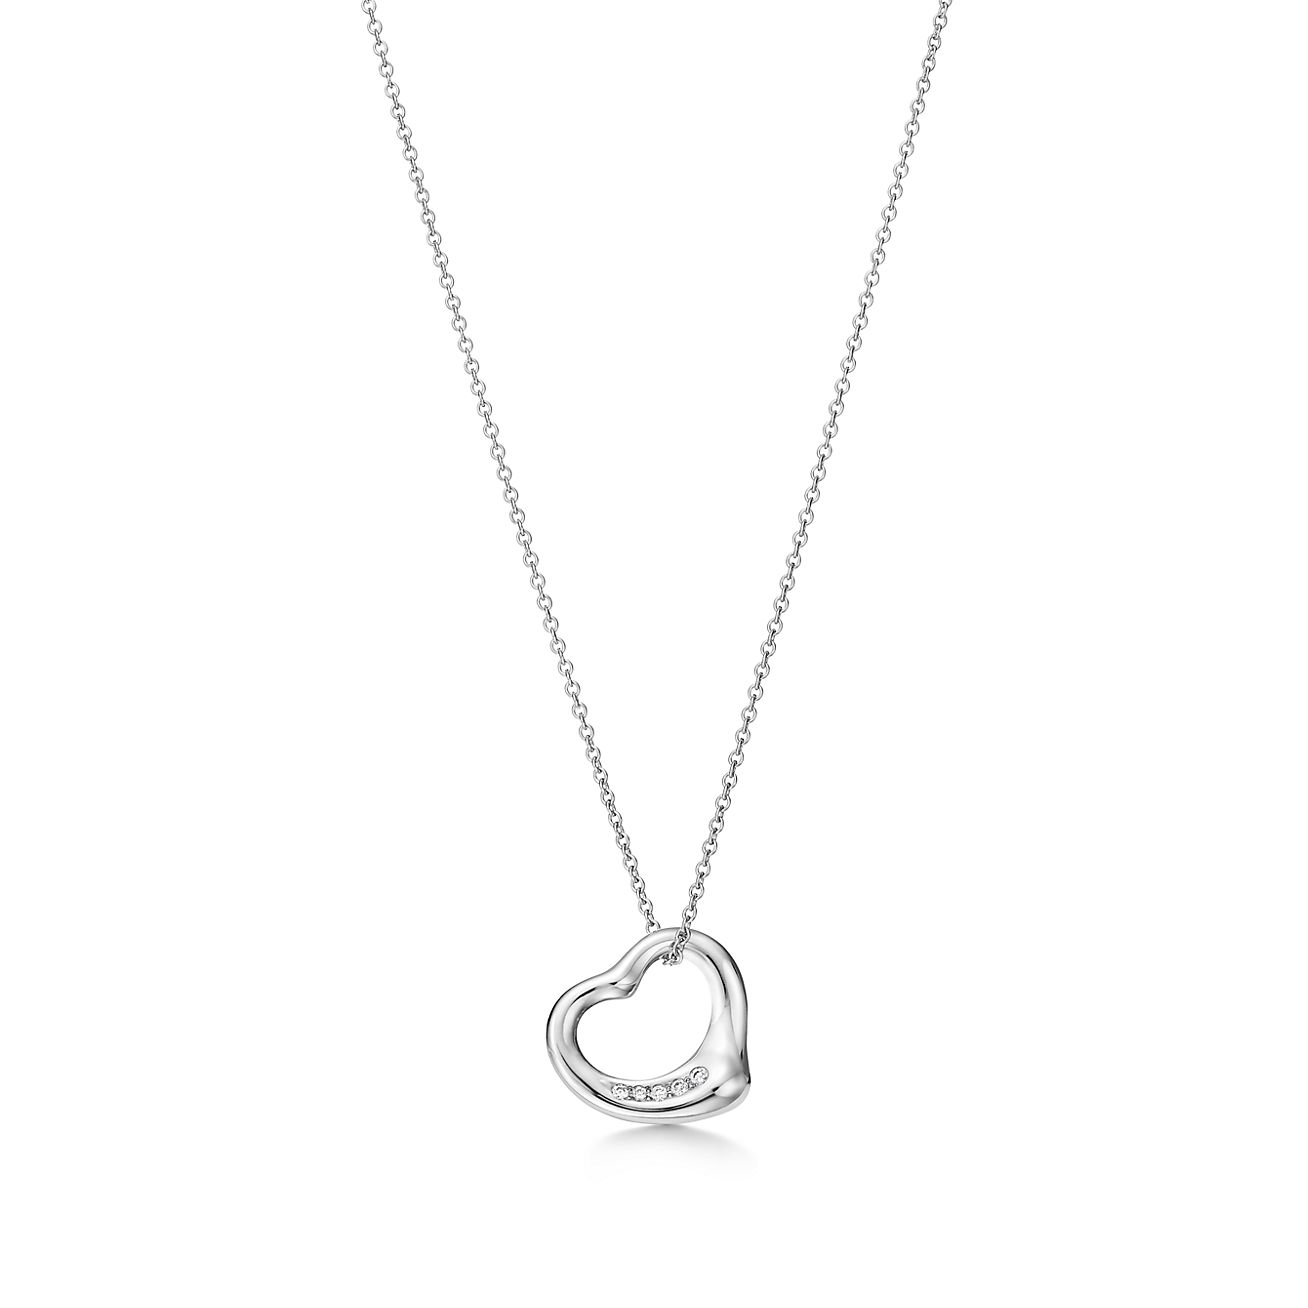 Elsa Peretti Open Heart Sterling Silver Bracelet